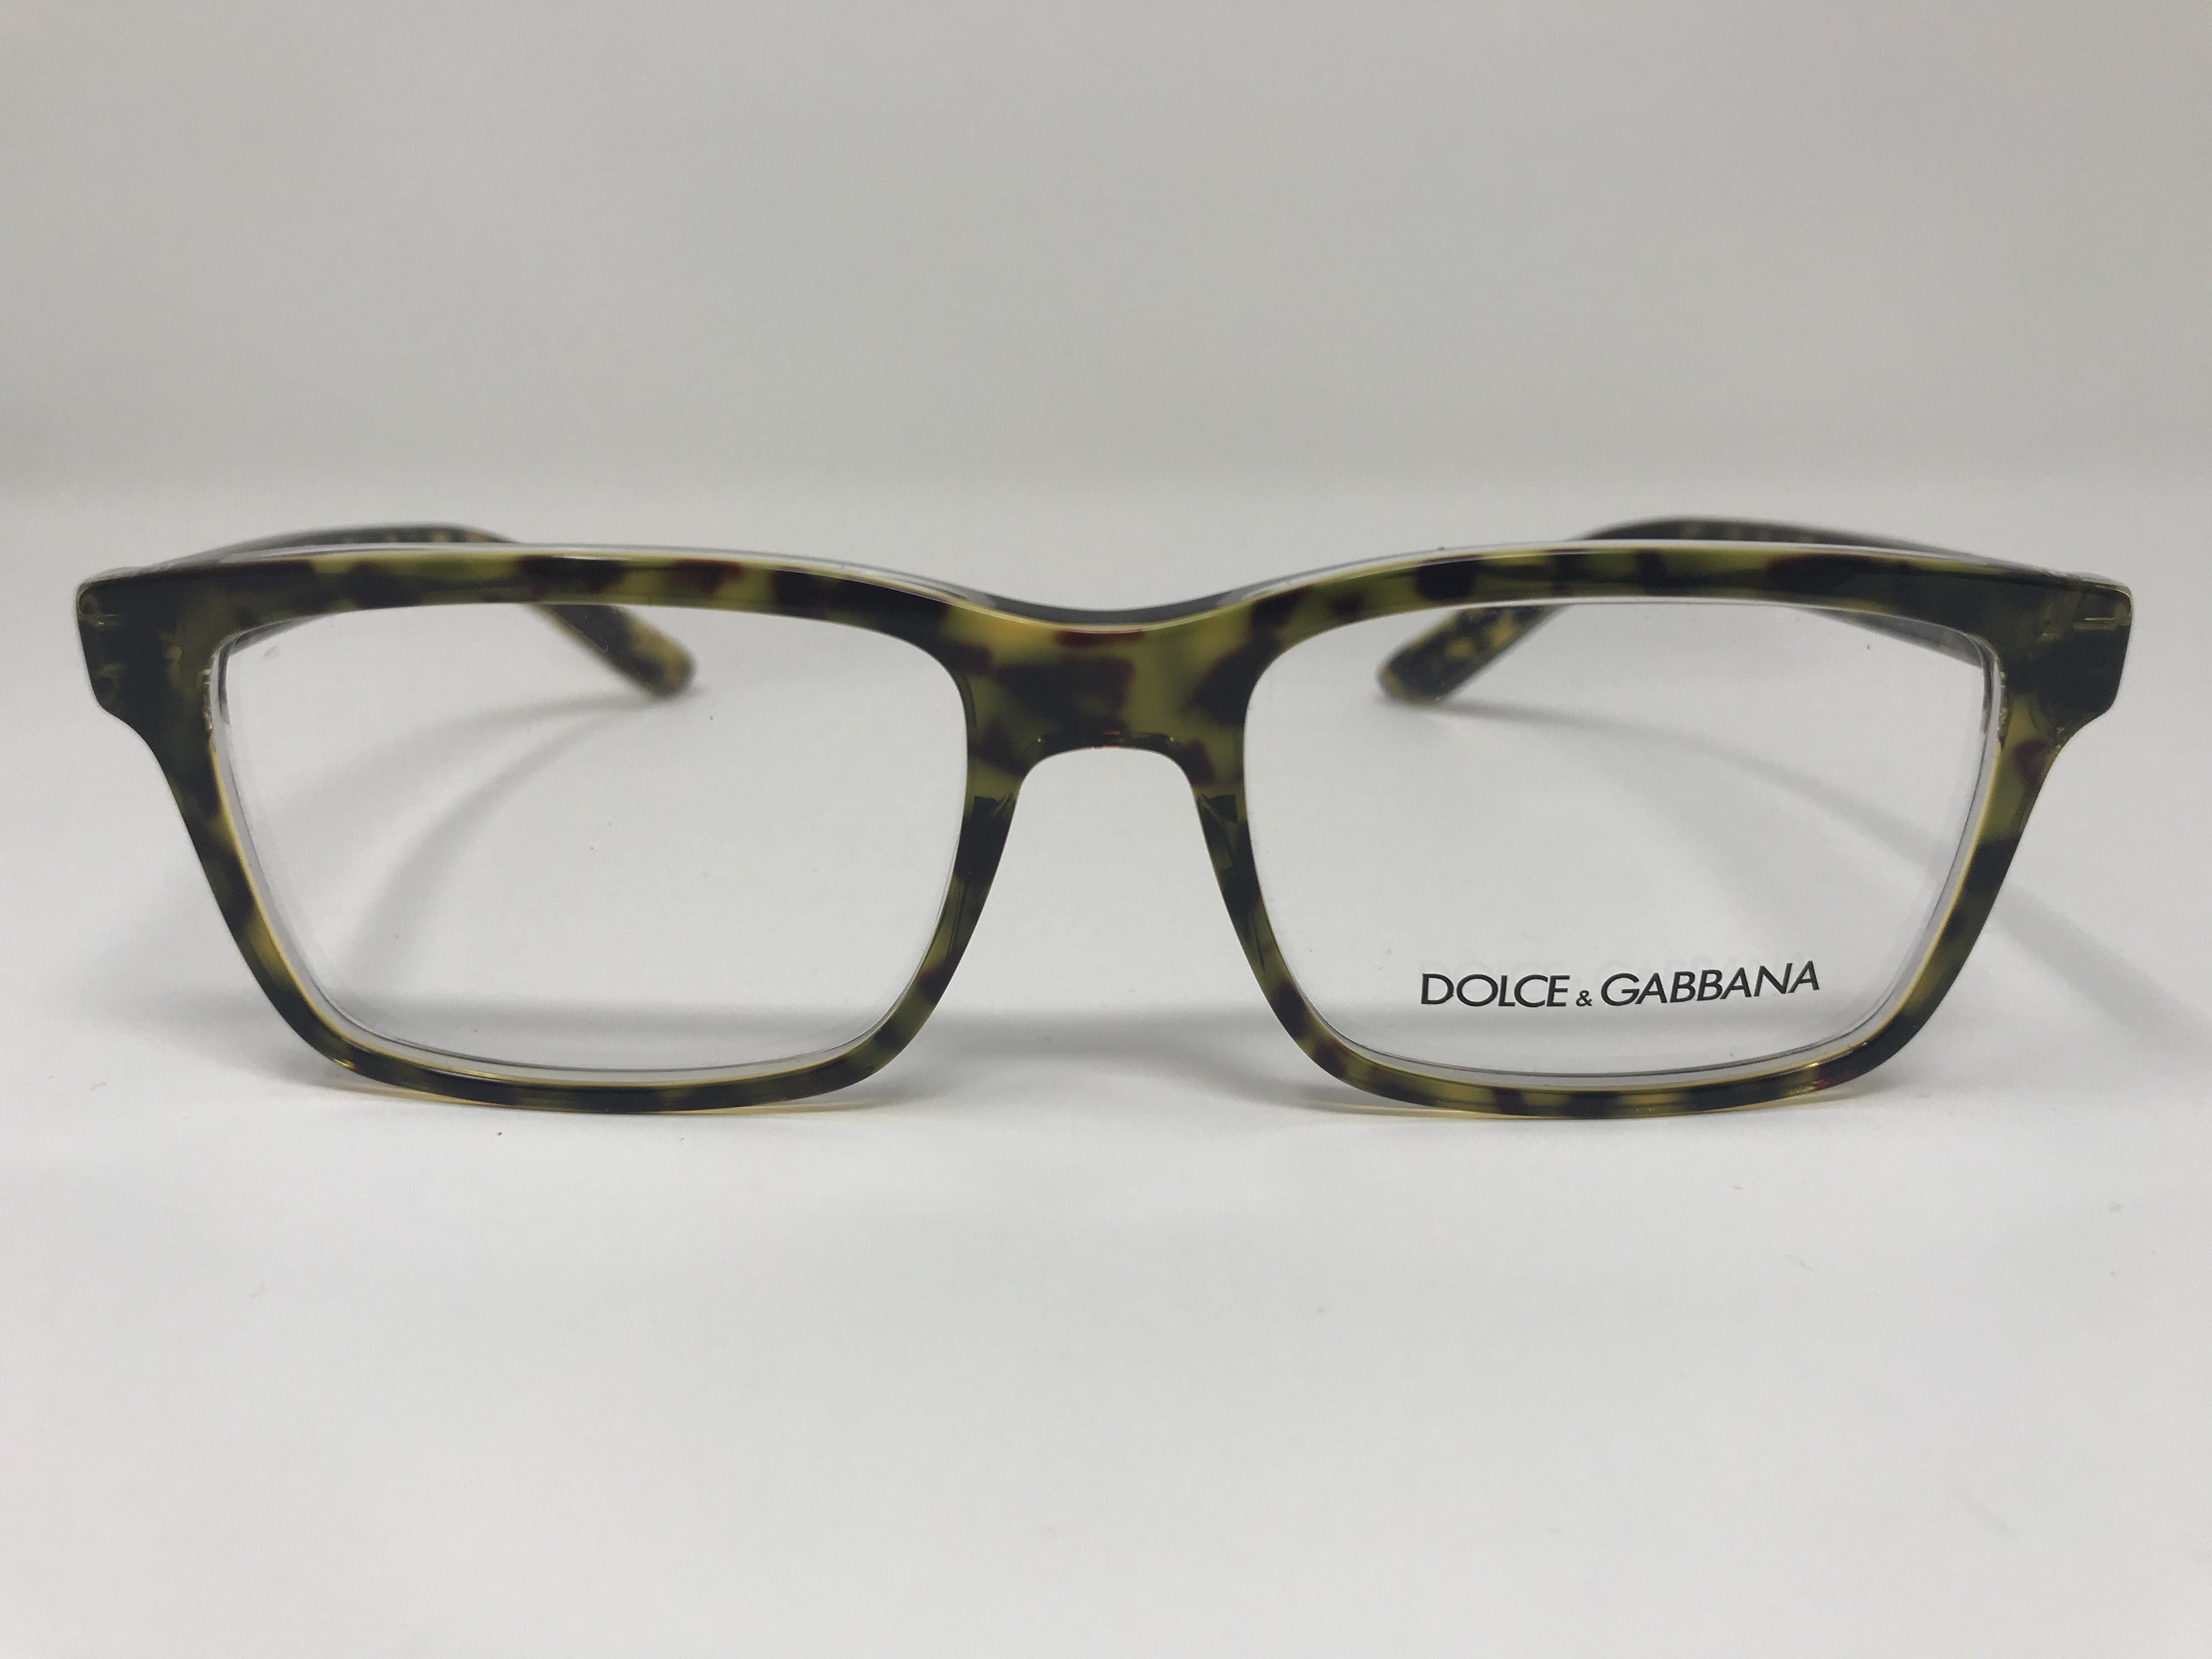 Dolce & Gabbana DG 3157 Unisex eyeglasses